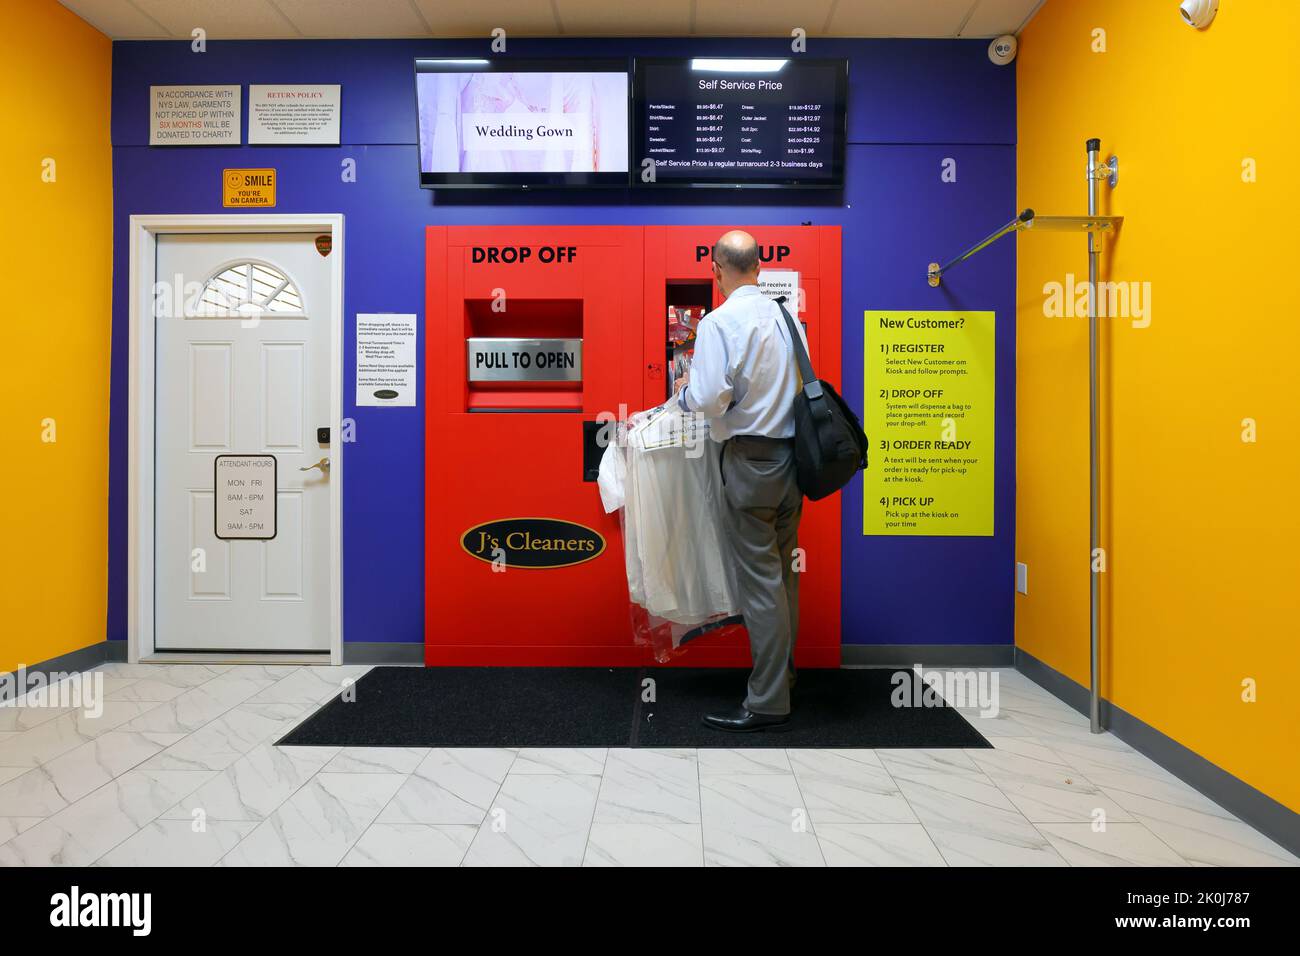 Une personne utilisant un kiosque automatisé de nettoyage à sec 24hr à J's Cleaners à New York, NY. Banque D'Images